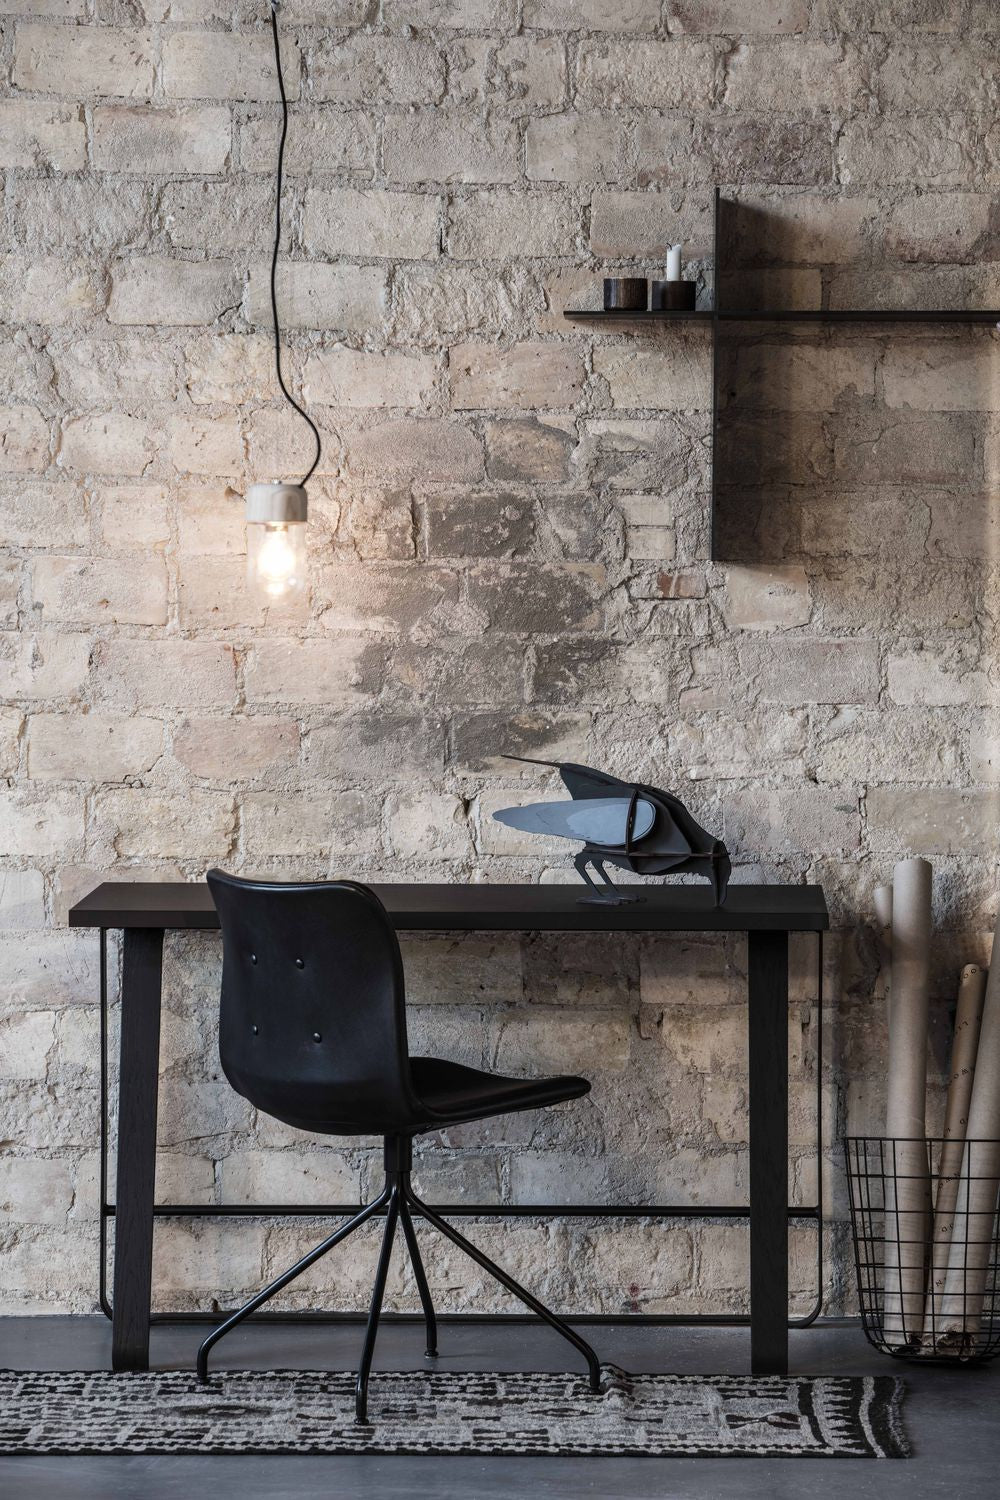 Bent Hansen Primum -stol med armstöd rostfritt stål ram, Brown Davos läder